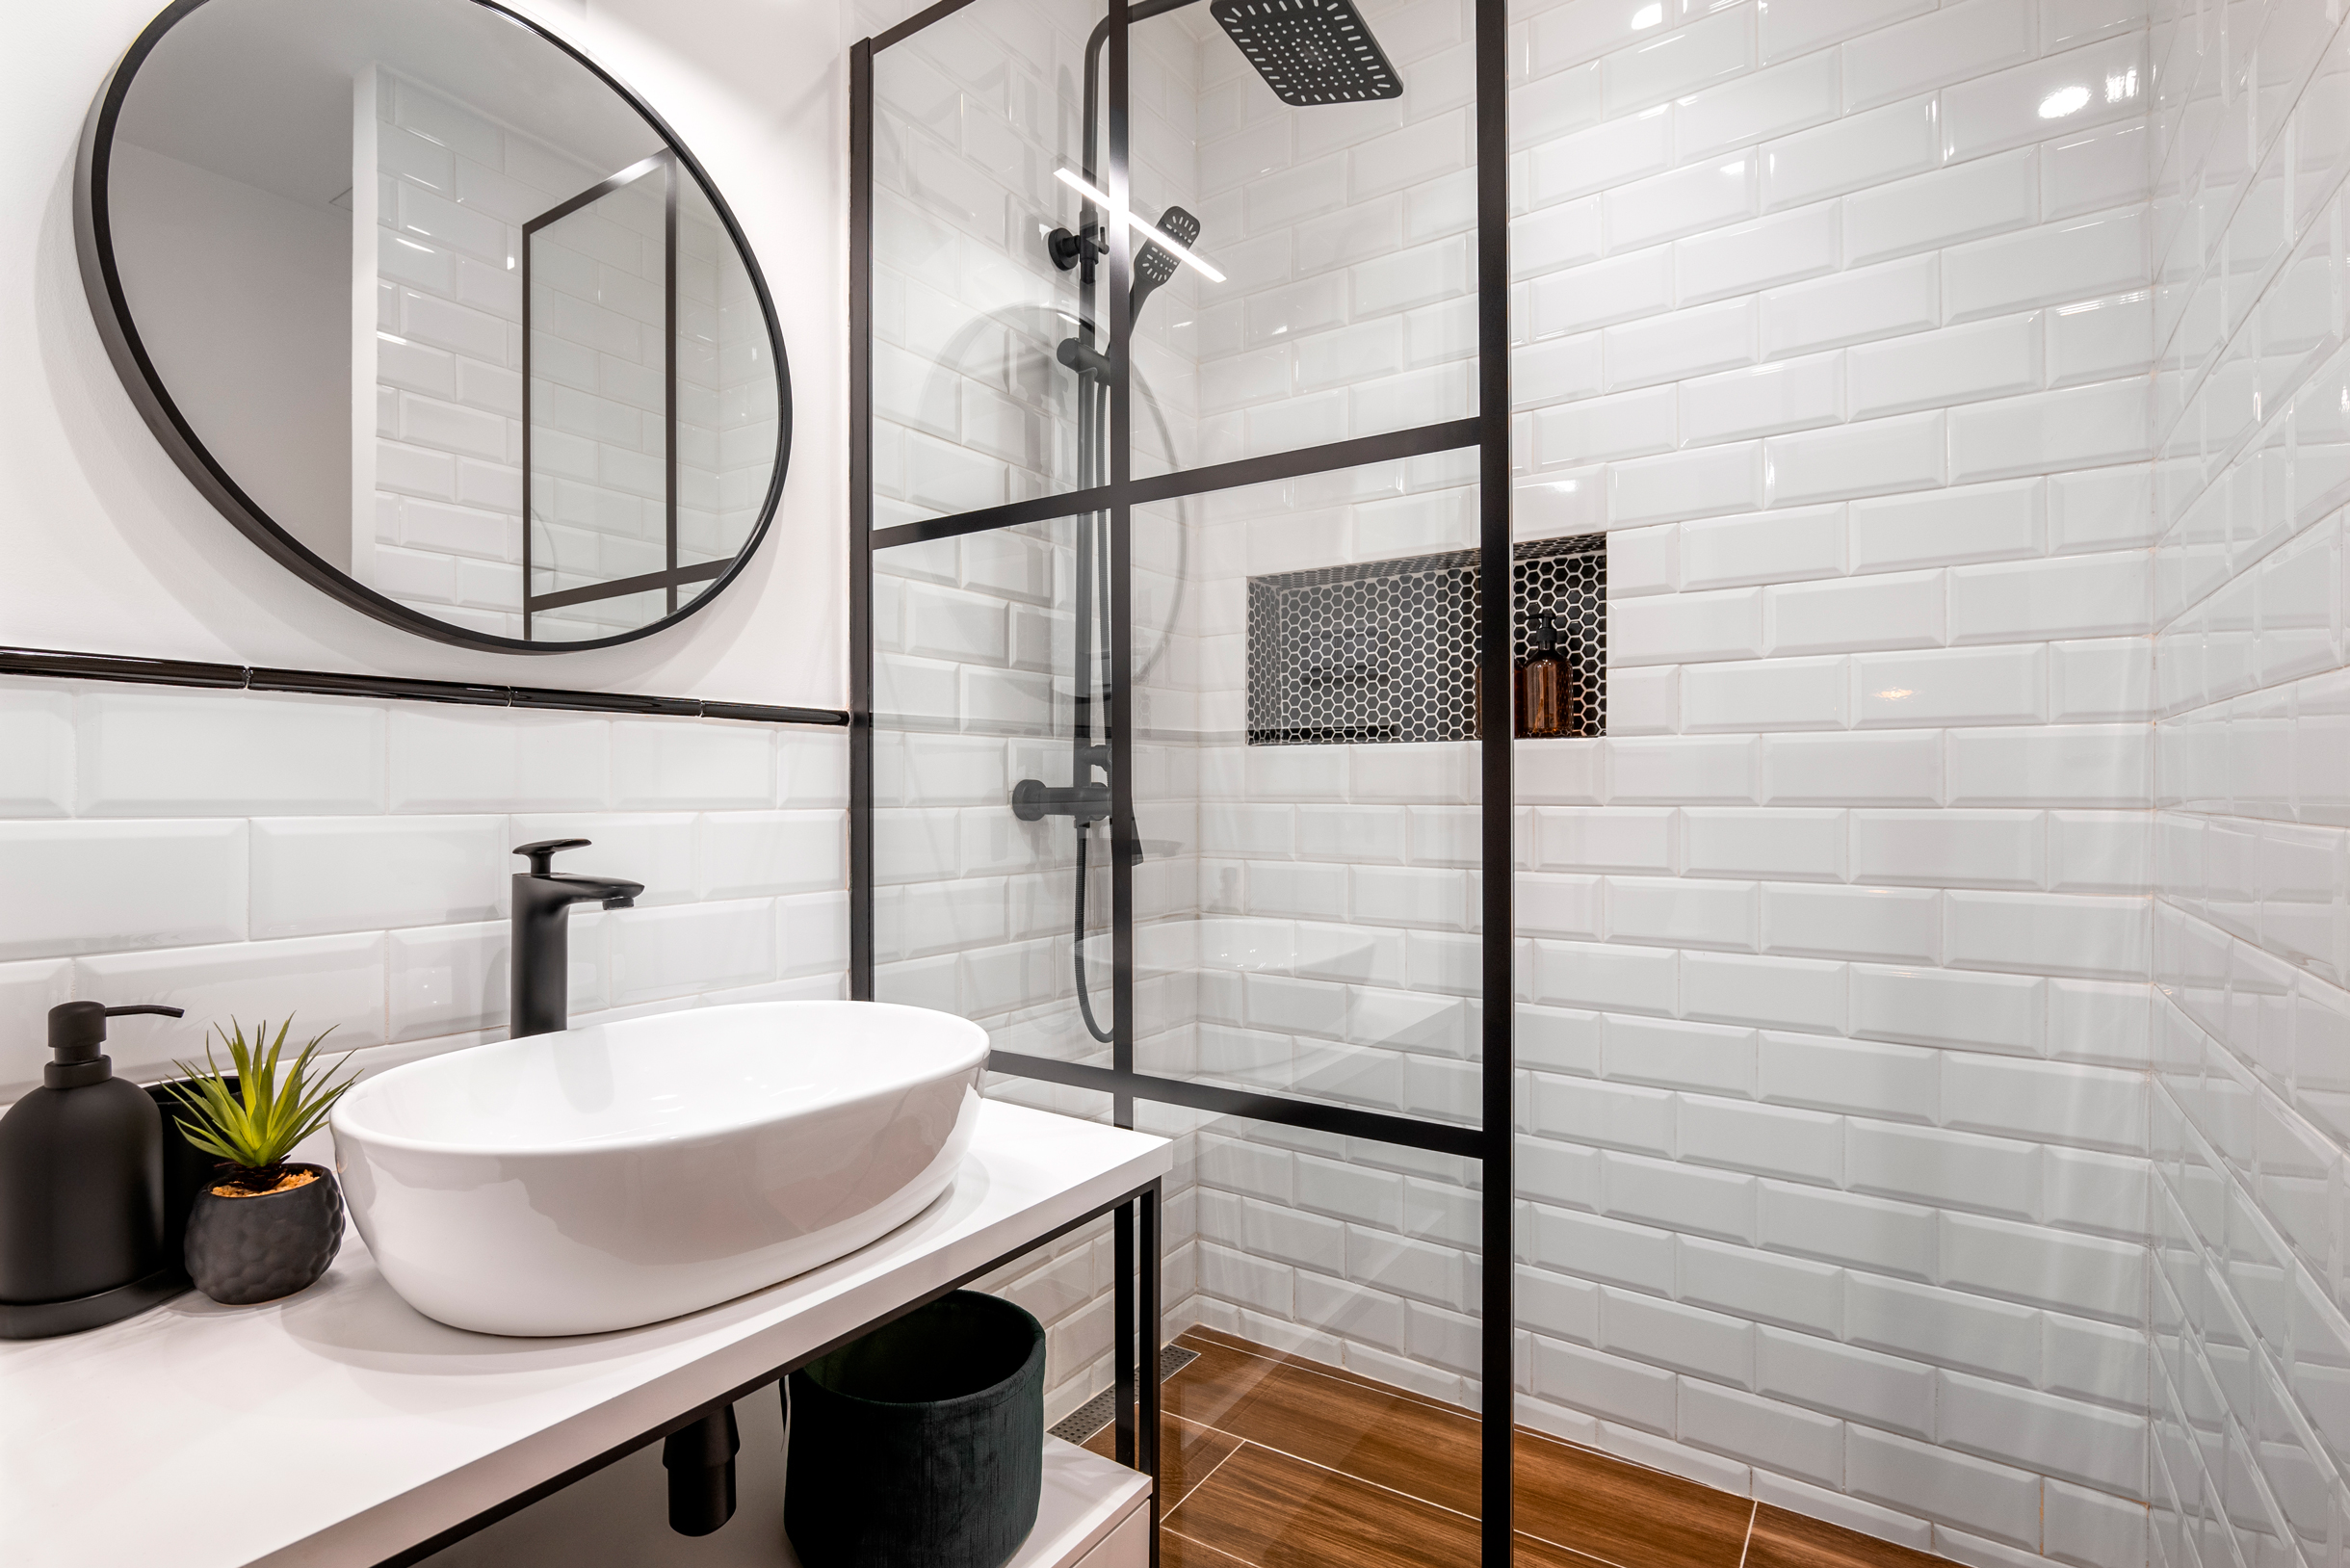 Так выглядит классическая сканди-ванная: белая плитка, черные и деревянные акценты. Фотография: Pavel Adashkevich / Shutterstock / FOTODOM